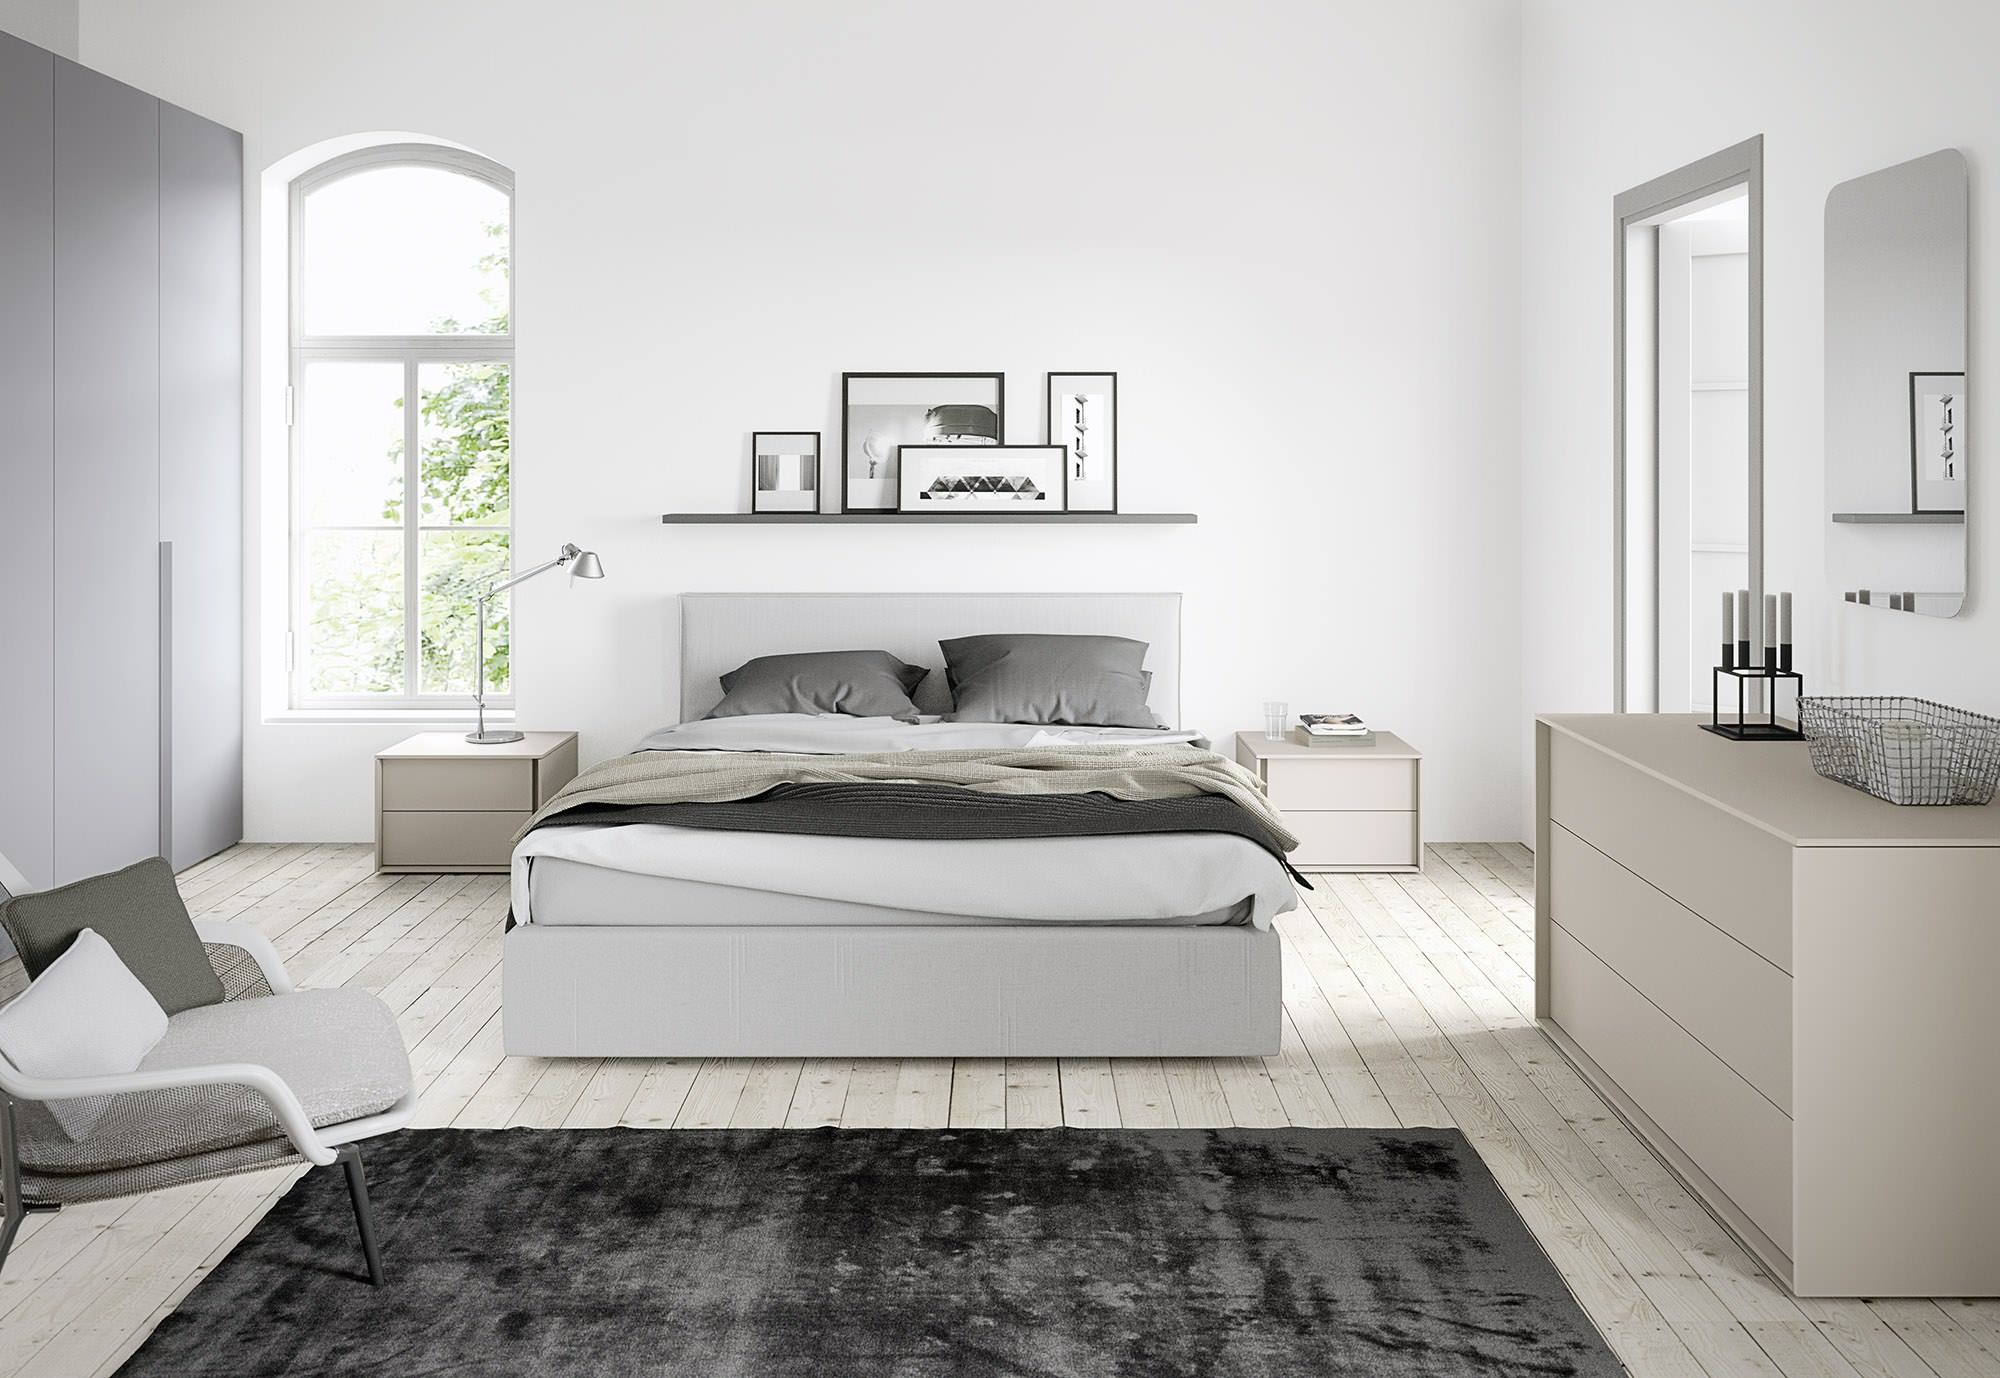 Dormitorios blancos y grises – Ideas para decorar diseños residenciales